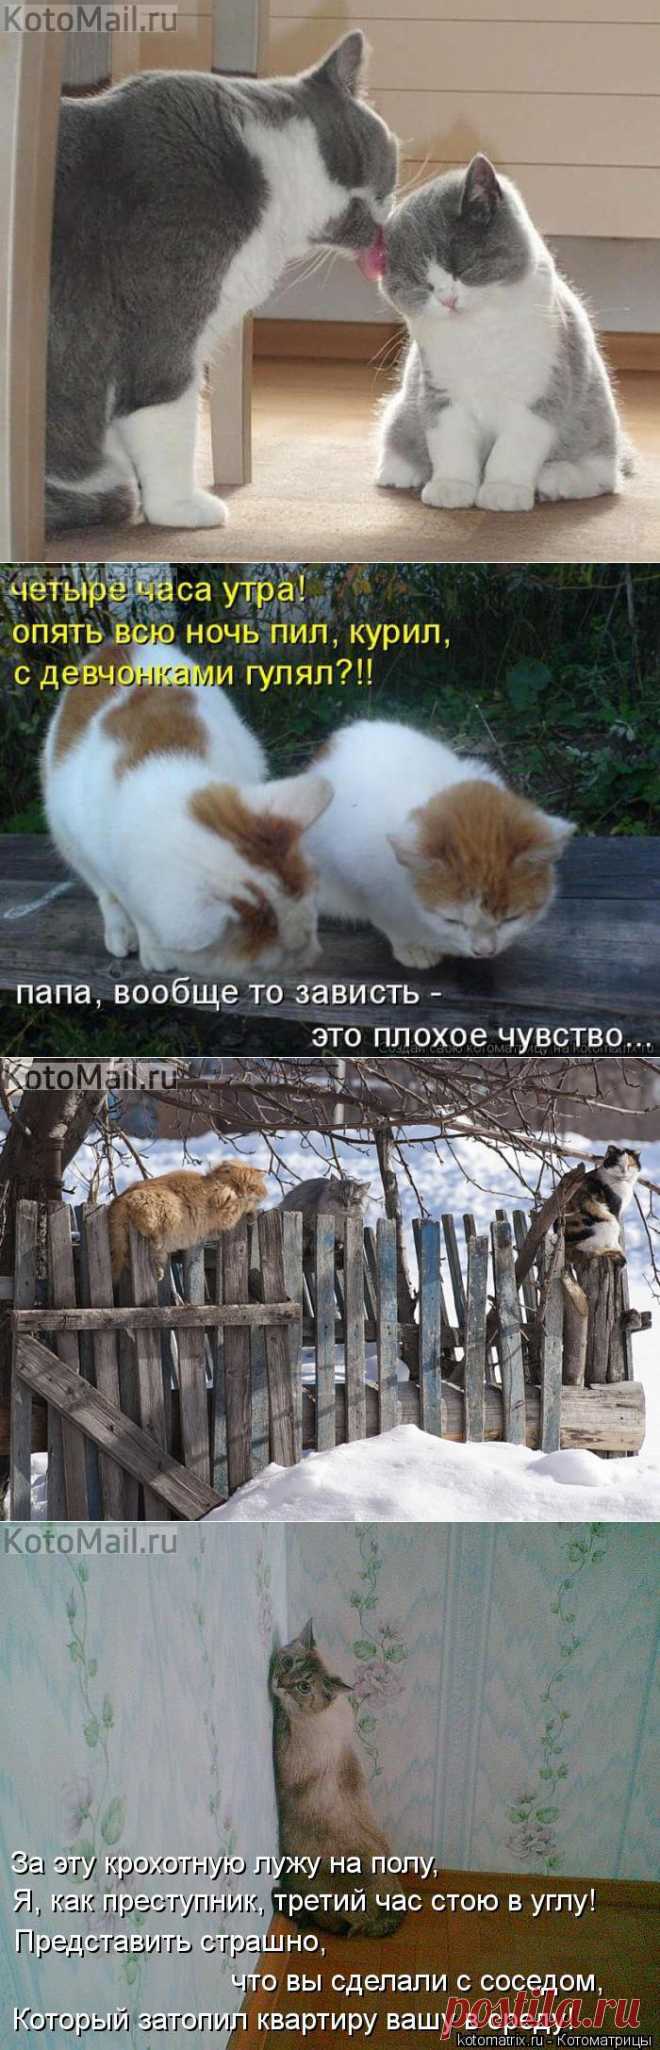 Умывайся и слушайся маму! | KotoMail.ru